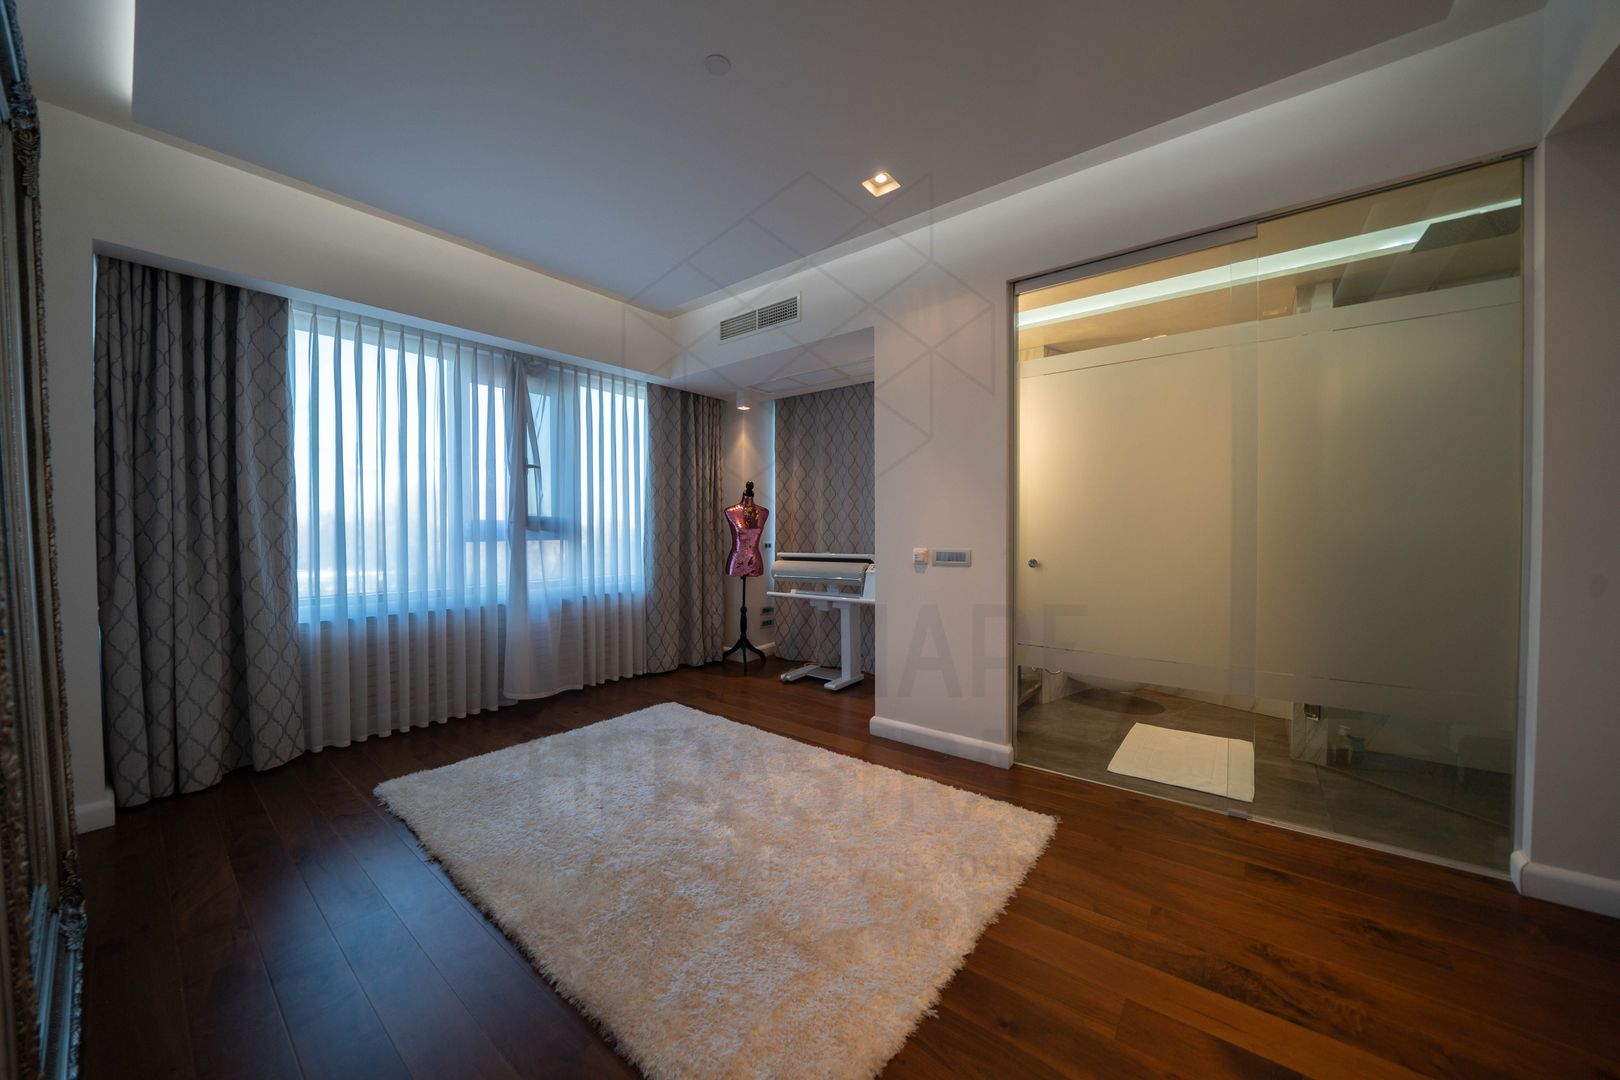 Primavera Junior Suite | Apartament insorit, vedere deschisa | B-dul Primaverii